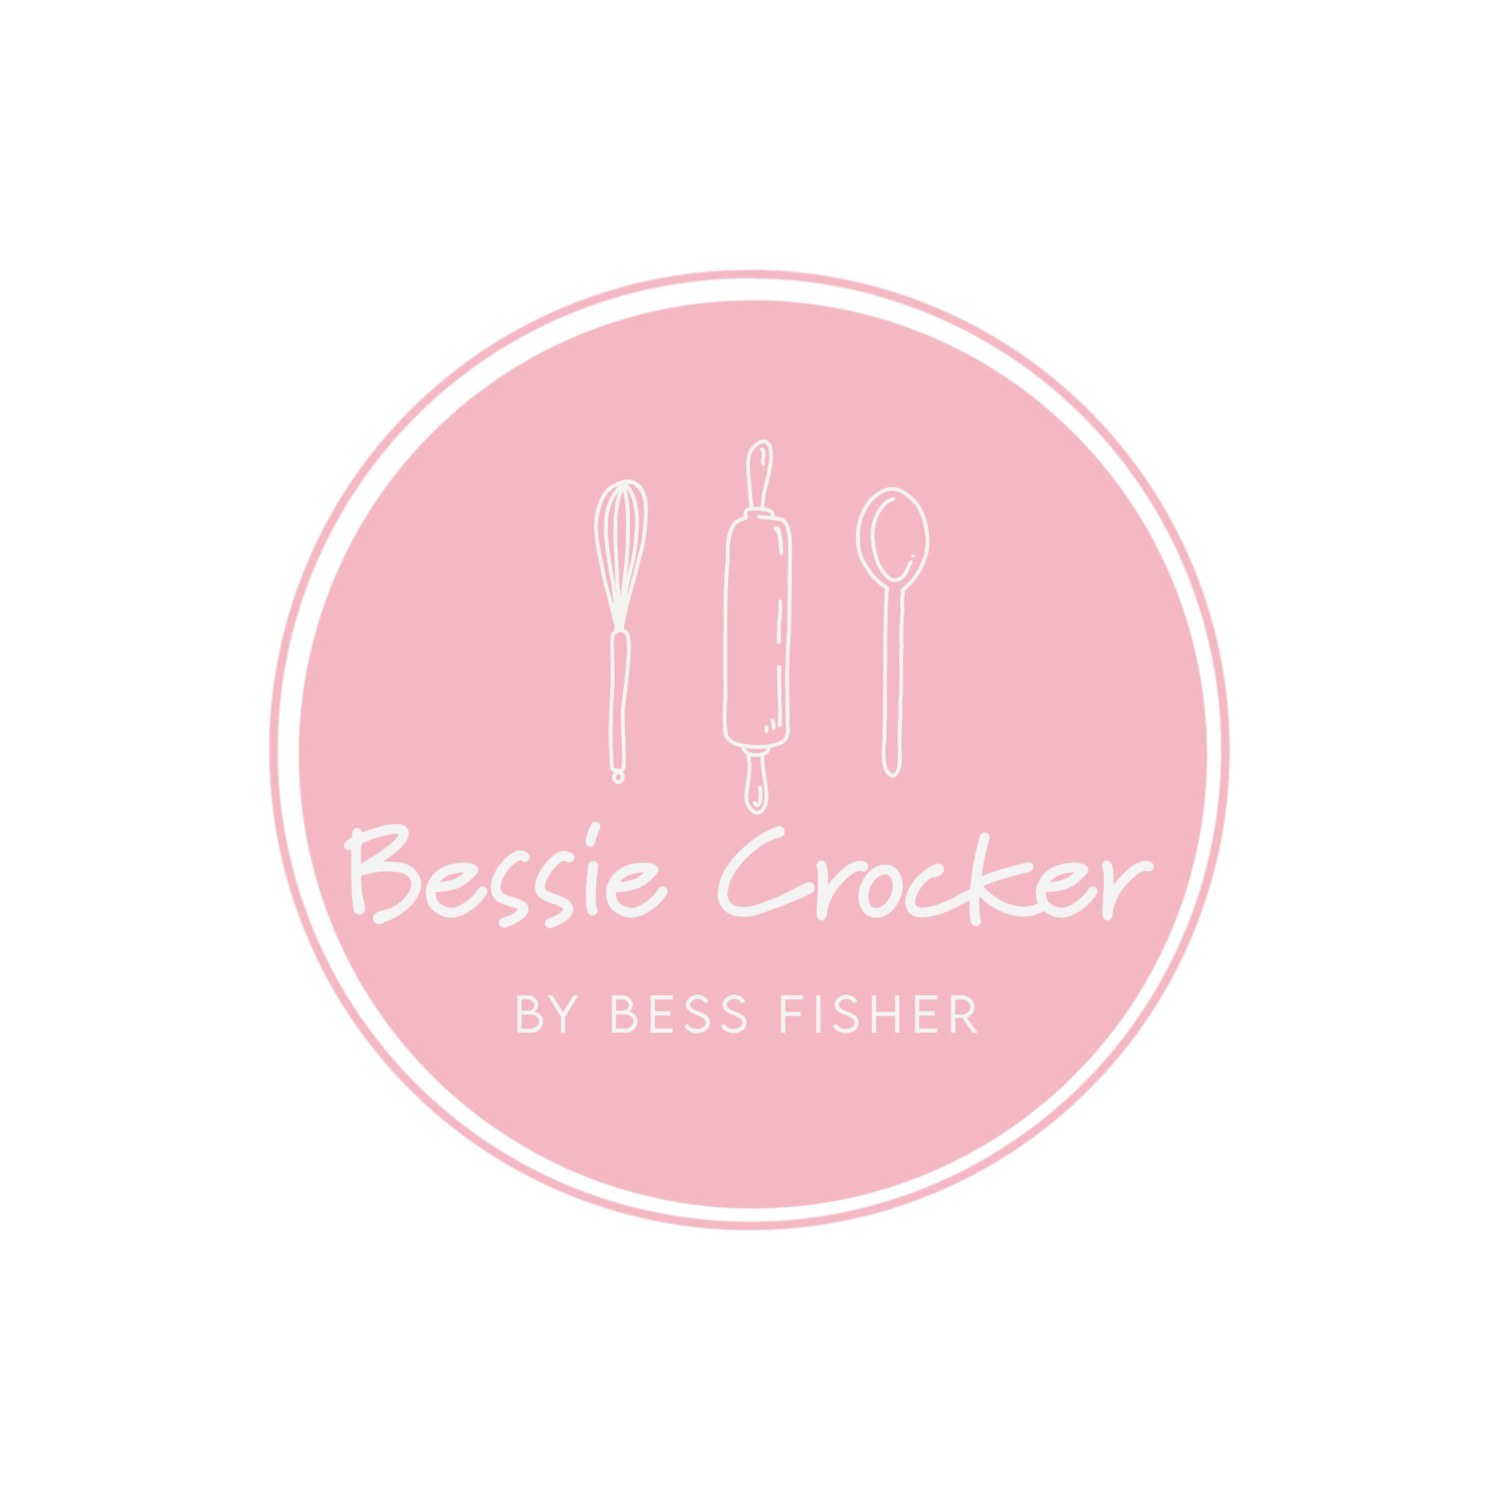 Bessie Crocker